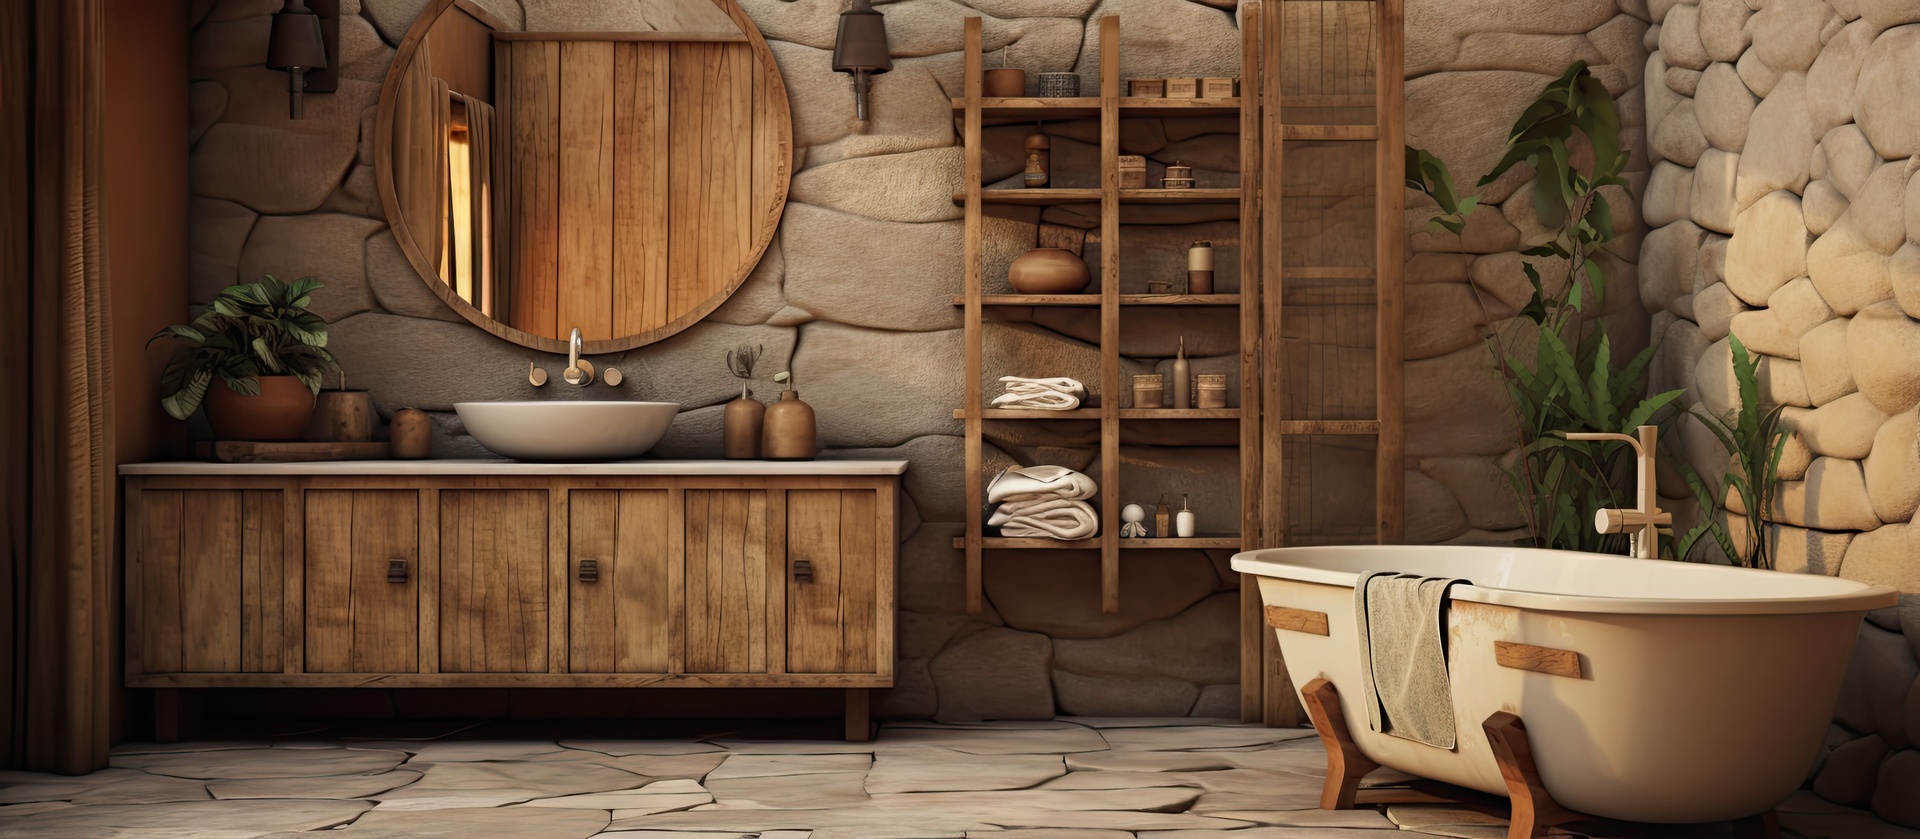 Na tym pięknym obrazku możemy podziwiać rustykalną łazienkę, która oczarowuje swoim urokiem i naturalnym stylem. Drewniane belki sufitowe, drewniana podłoga i rustykalne akcenty tworzą przytulną atmosferę, przenosząc nas w sielskie wiejskie otoczenie. Rustykalna łazienka emanuje spokojem i harmonią, zapewniając idealne miejsce do relaksu i odprężenia w otoczeniu naturalnych materiałów i urokliwych detali